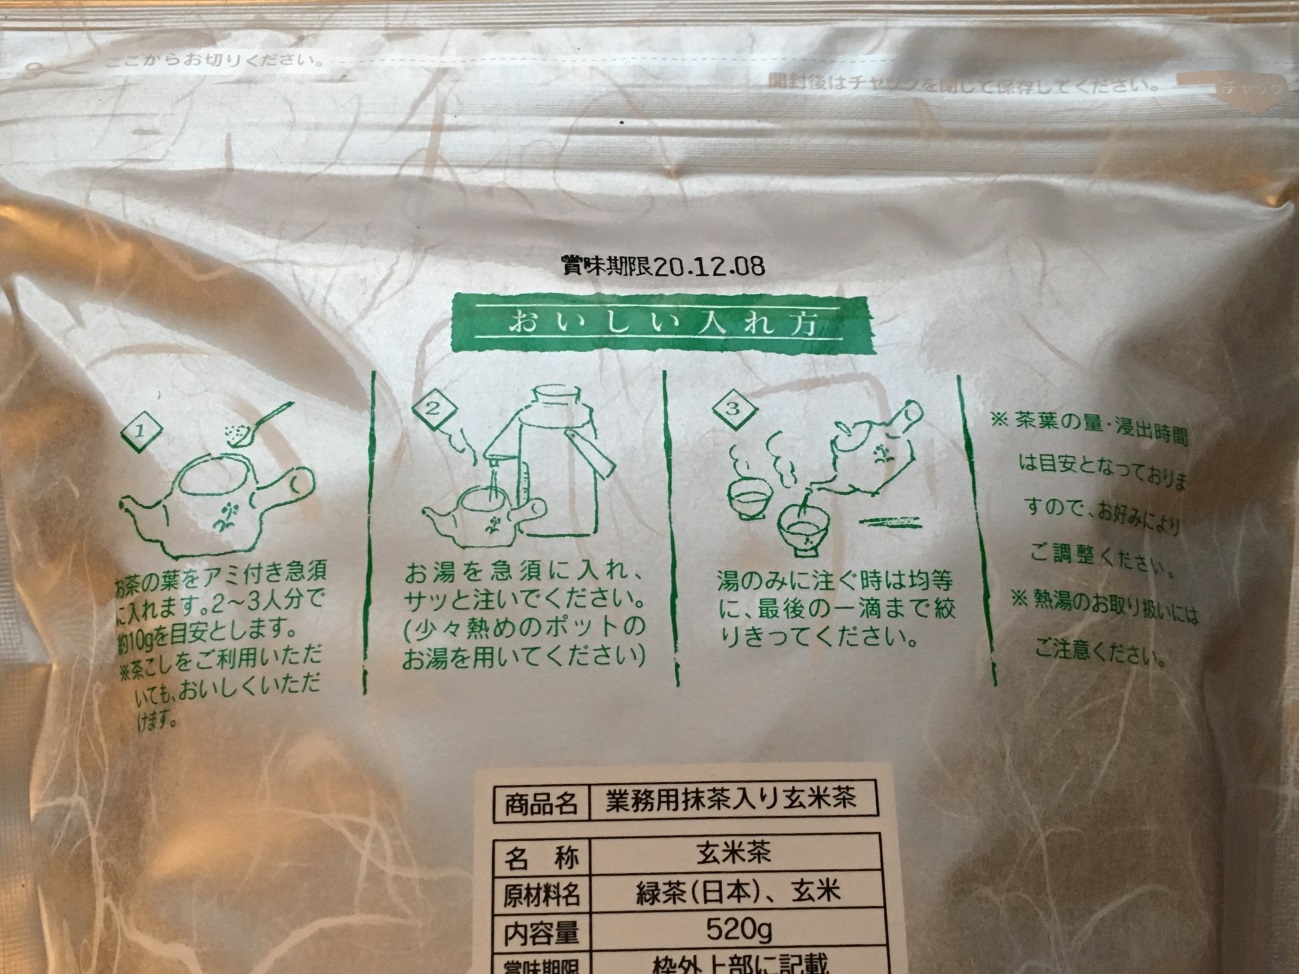 業務スーパーの玄米茶のパッケージに記載されているおいしい入れ方